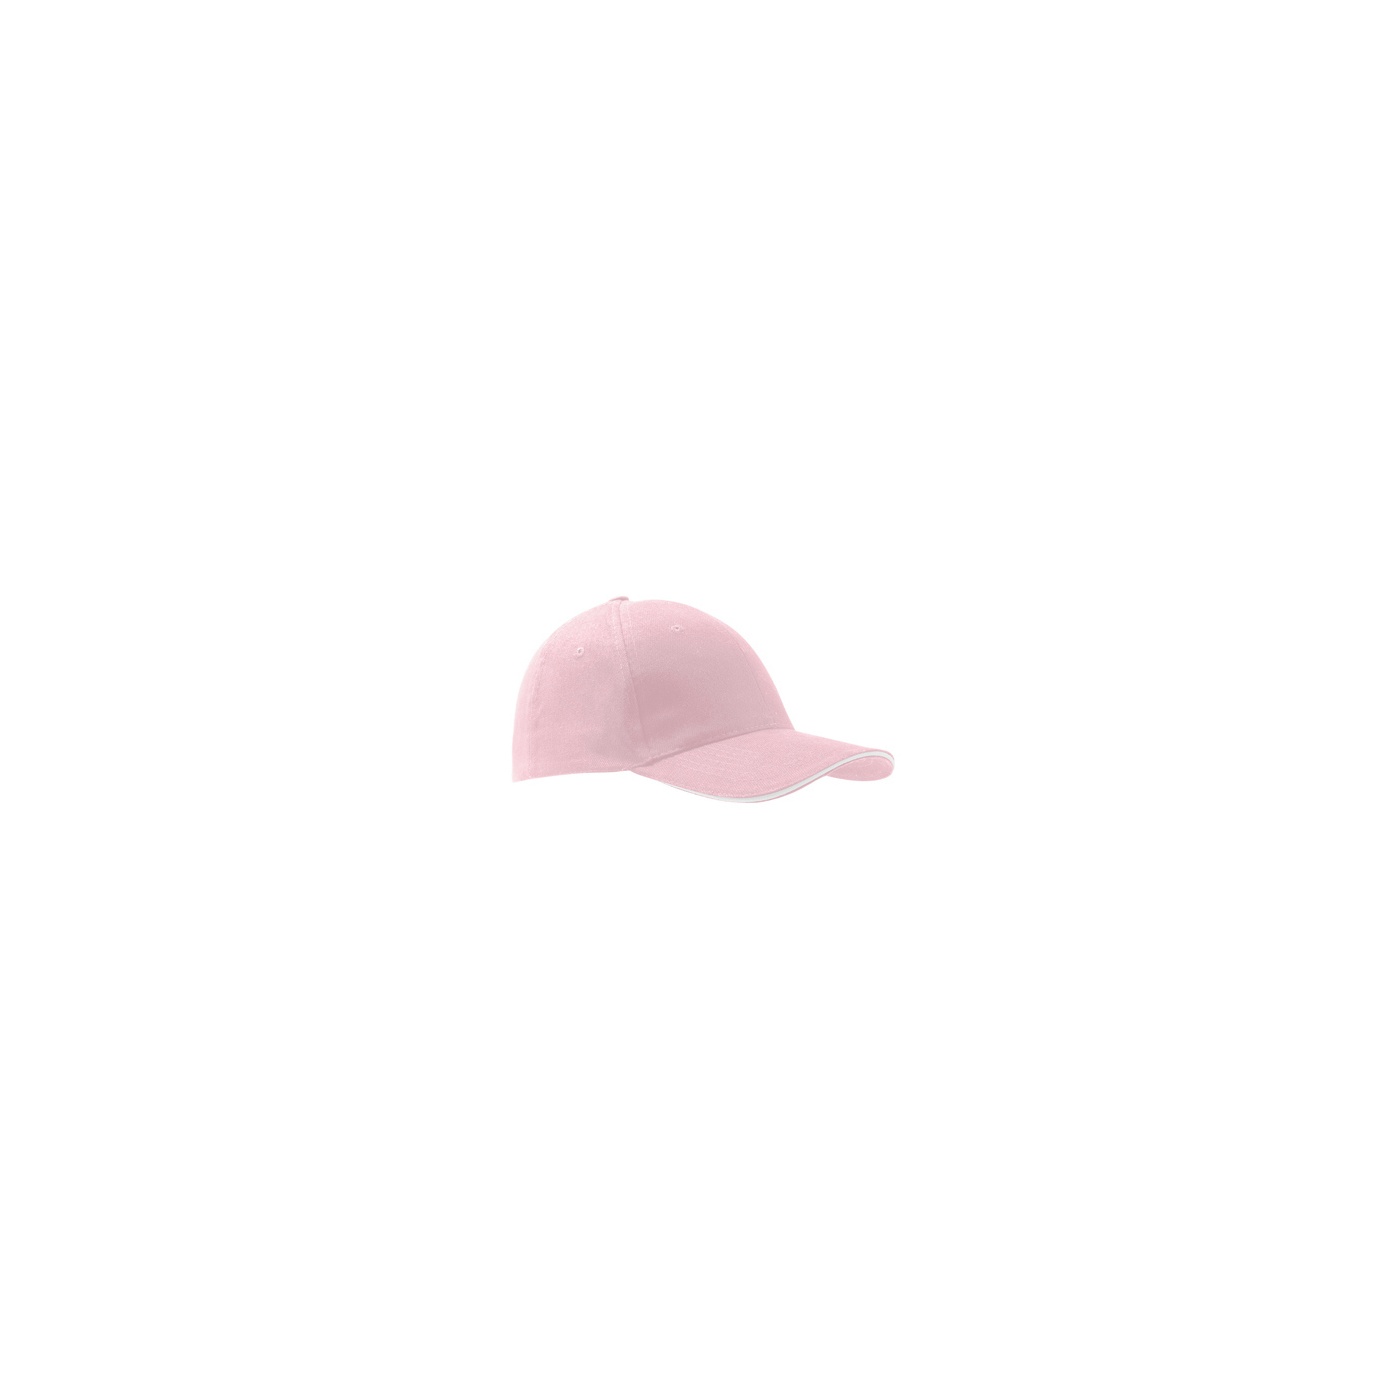 Czapka z daszkiem bejsbolówka – różowa z białym akcentem w daszku